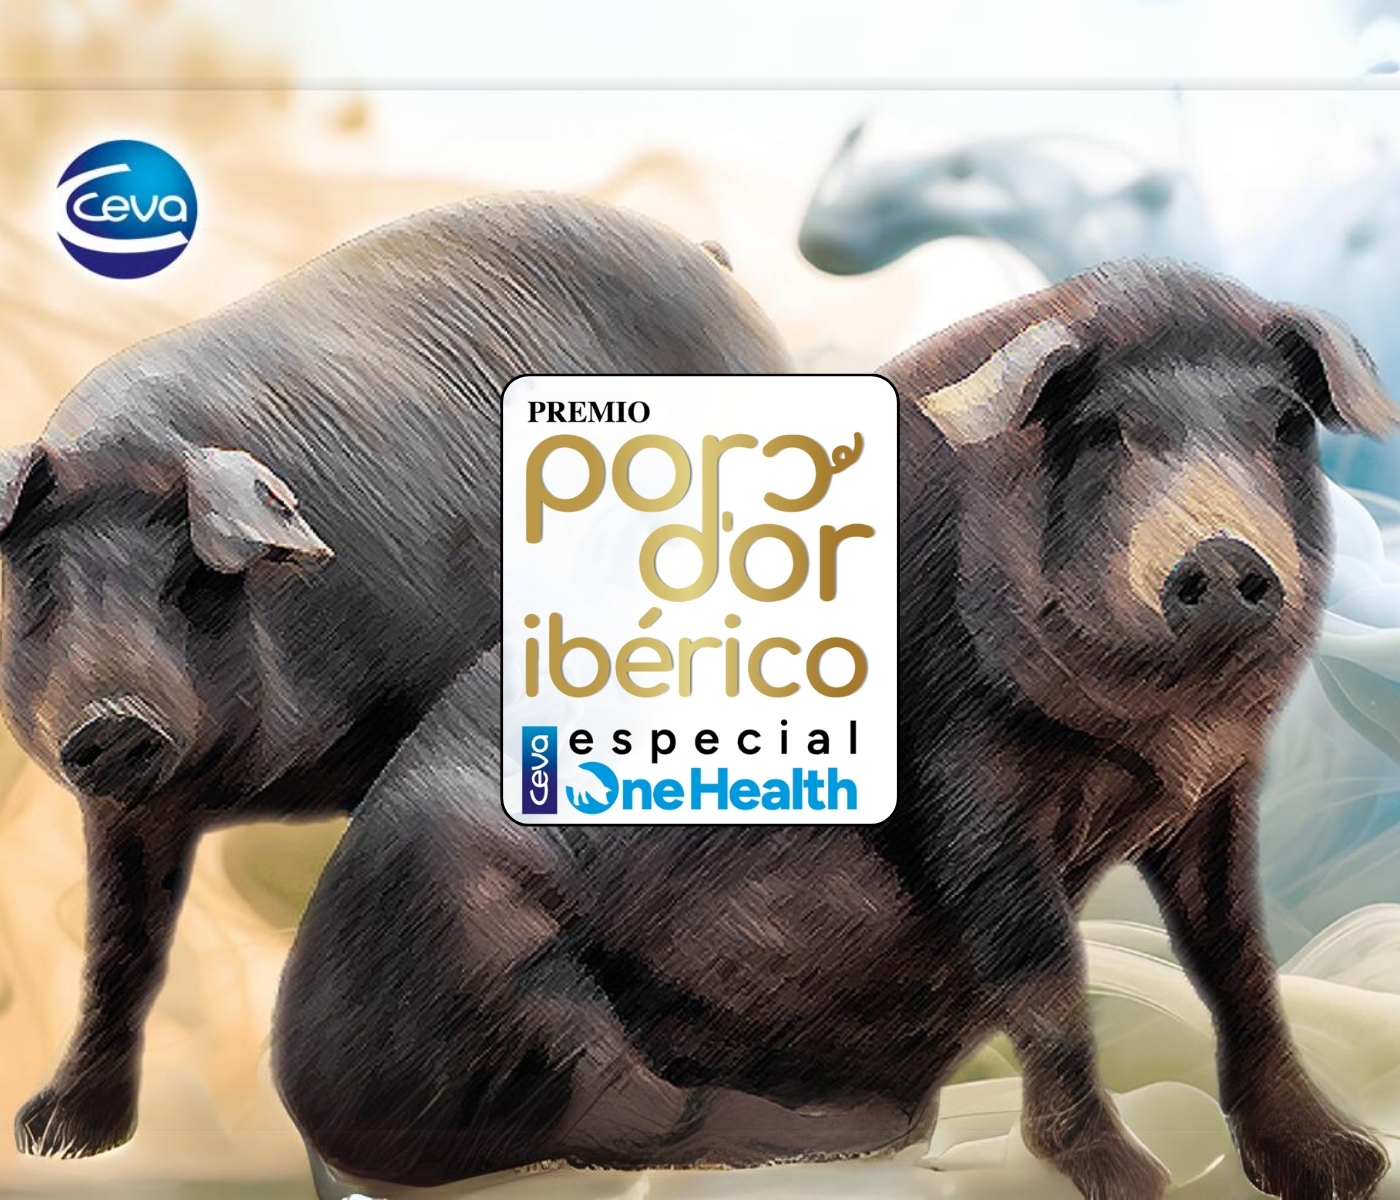 Ceva Salud Animal convoca el Premio Porc d’Or Ibérico especial...